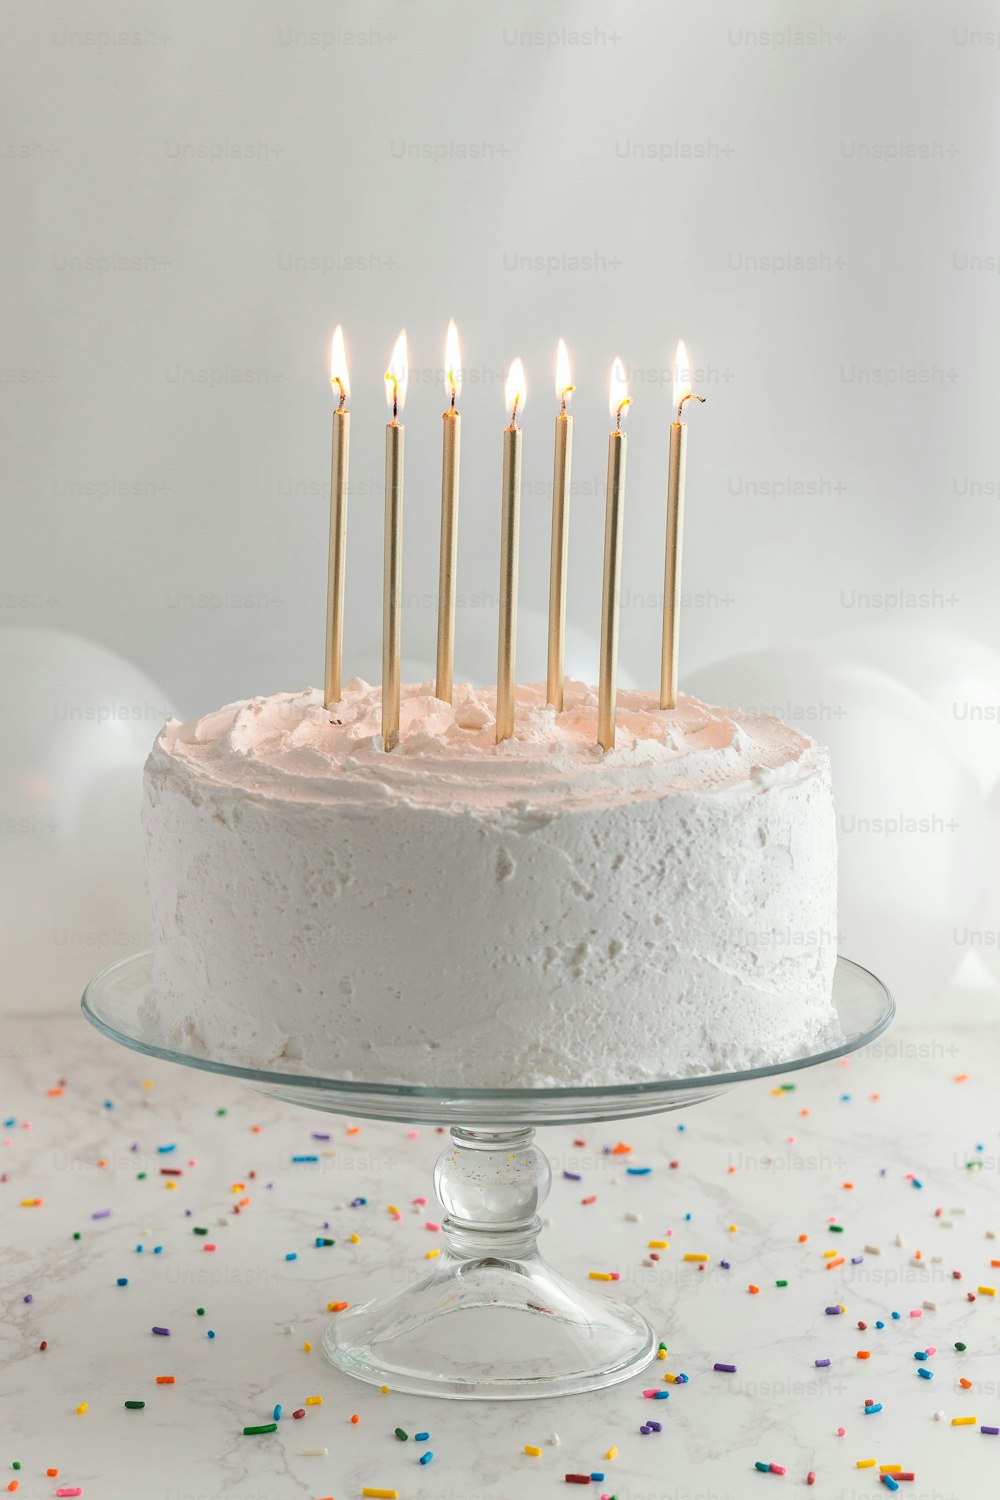 Un pastel de cumpleaños con glaseado blanco y velas encendidas